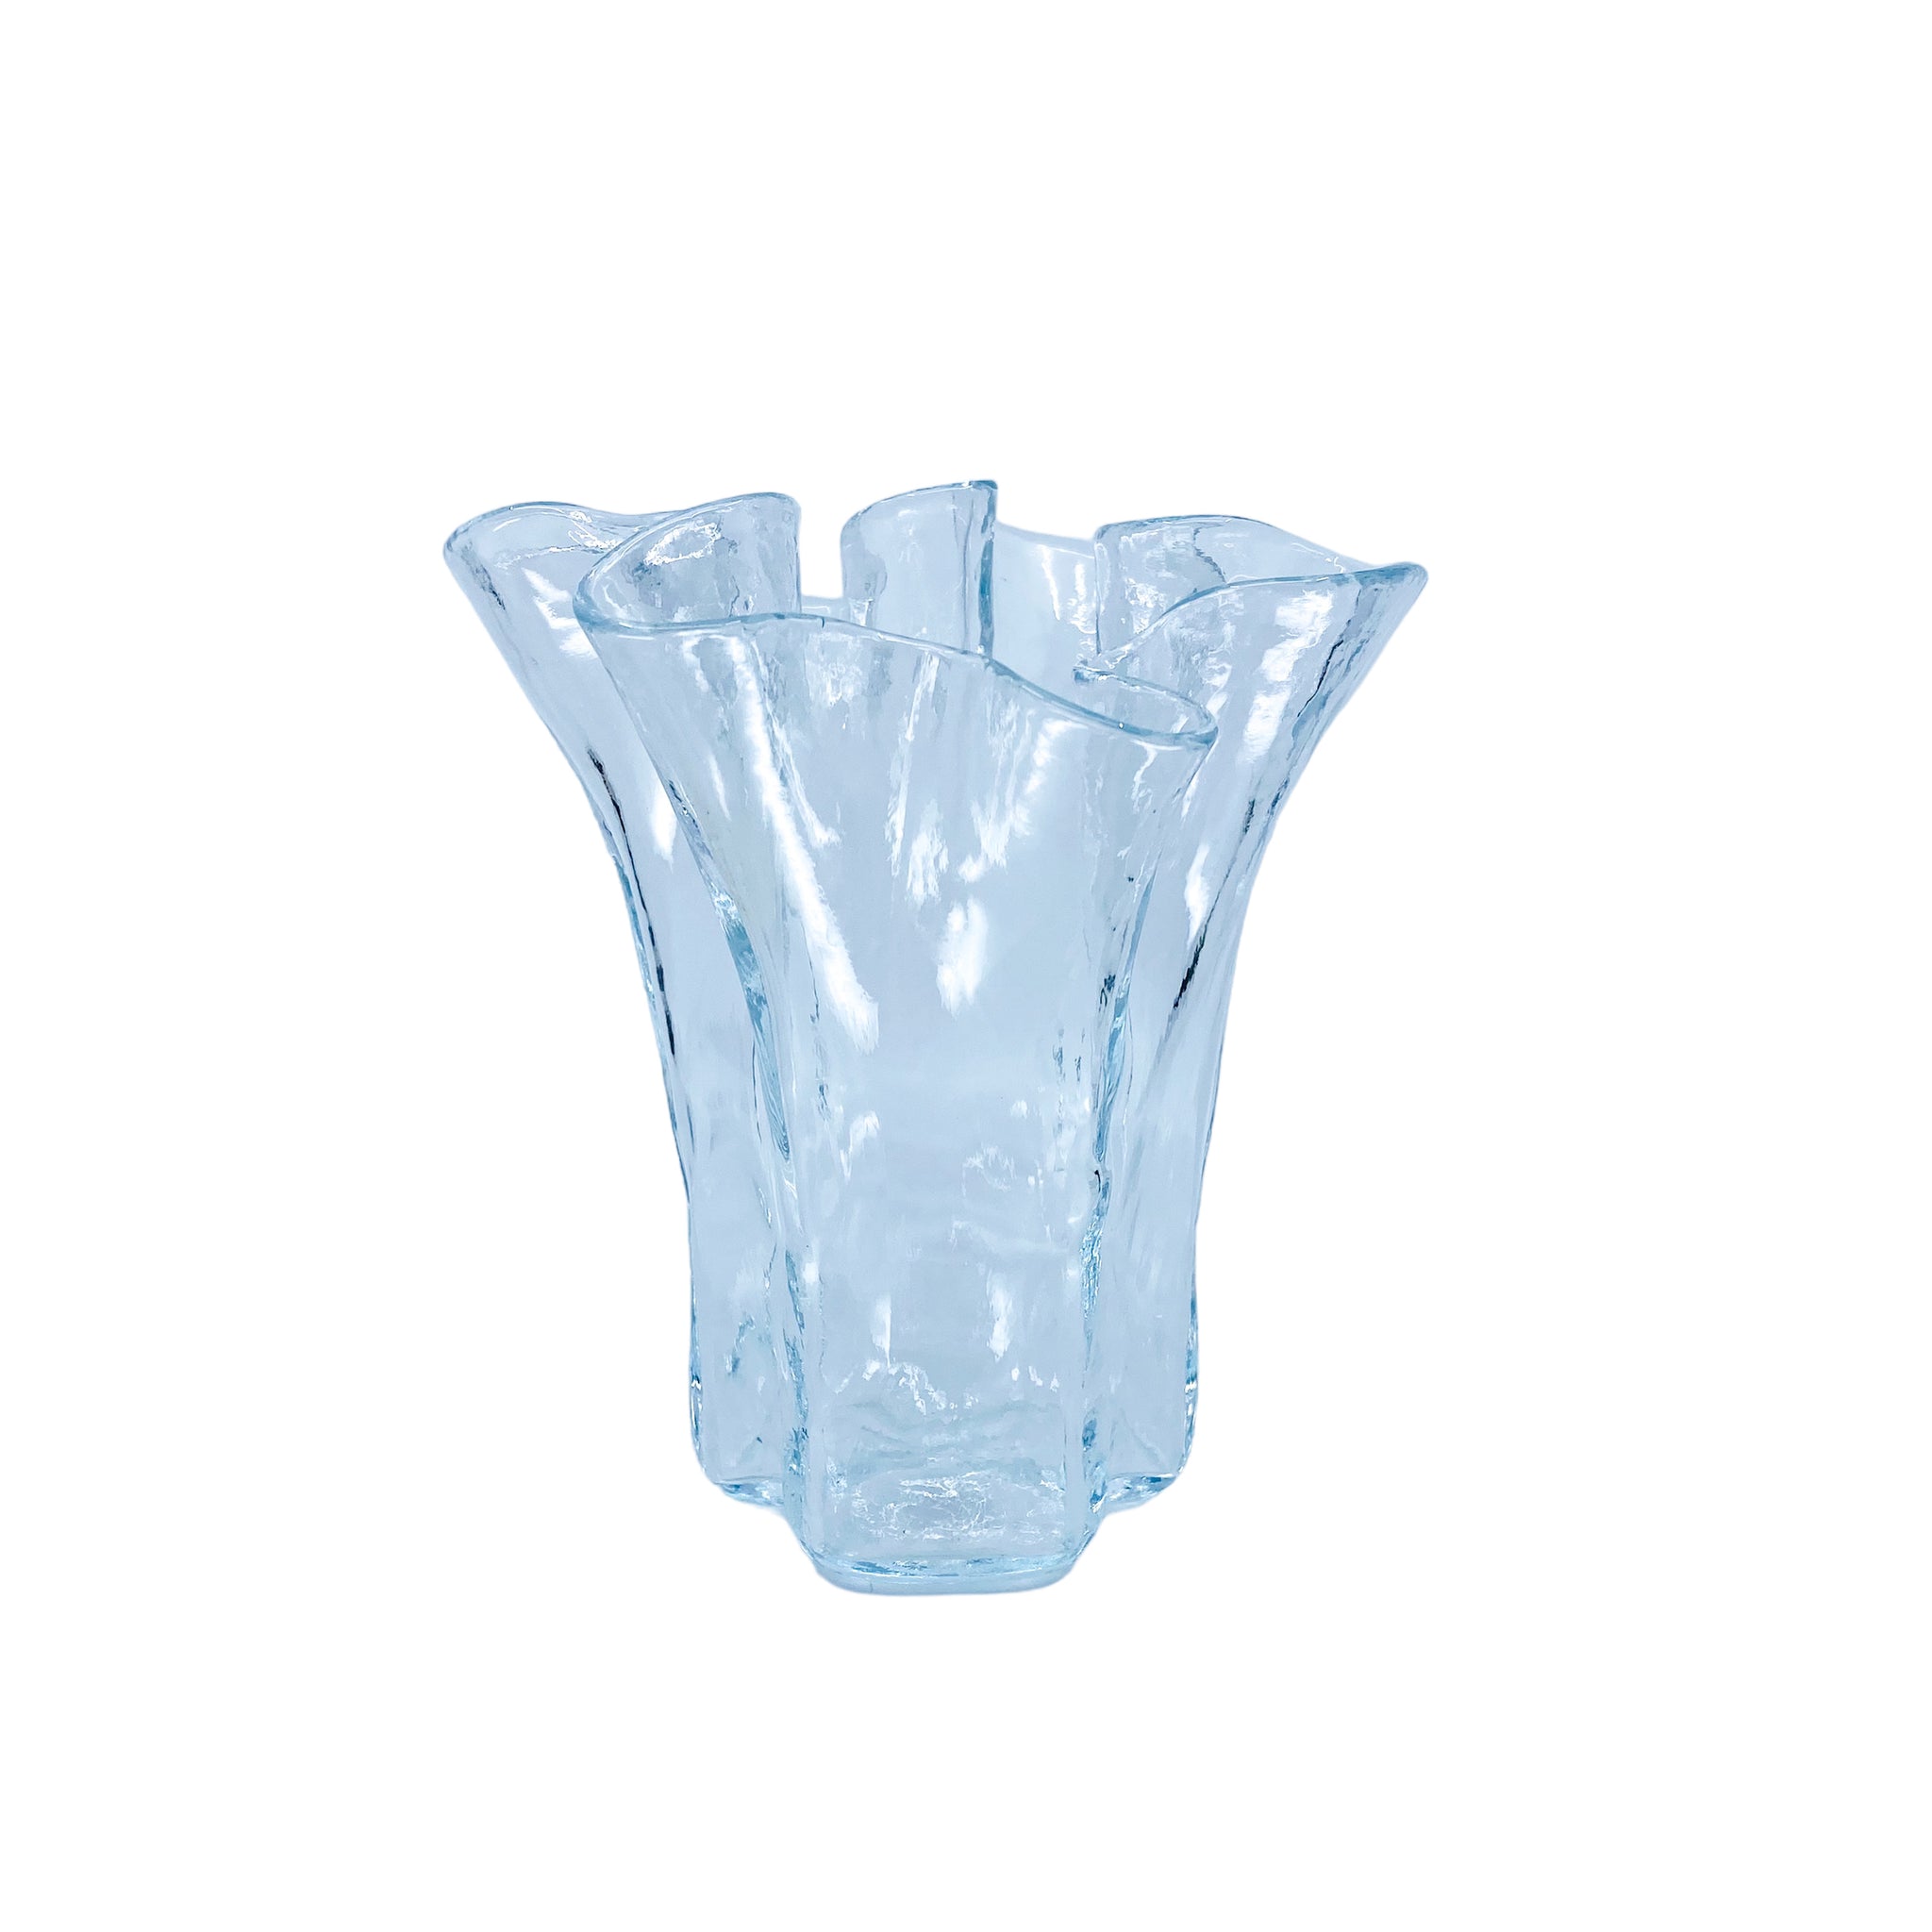 Vintage Ruffled Rim Glass Vase